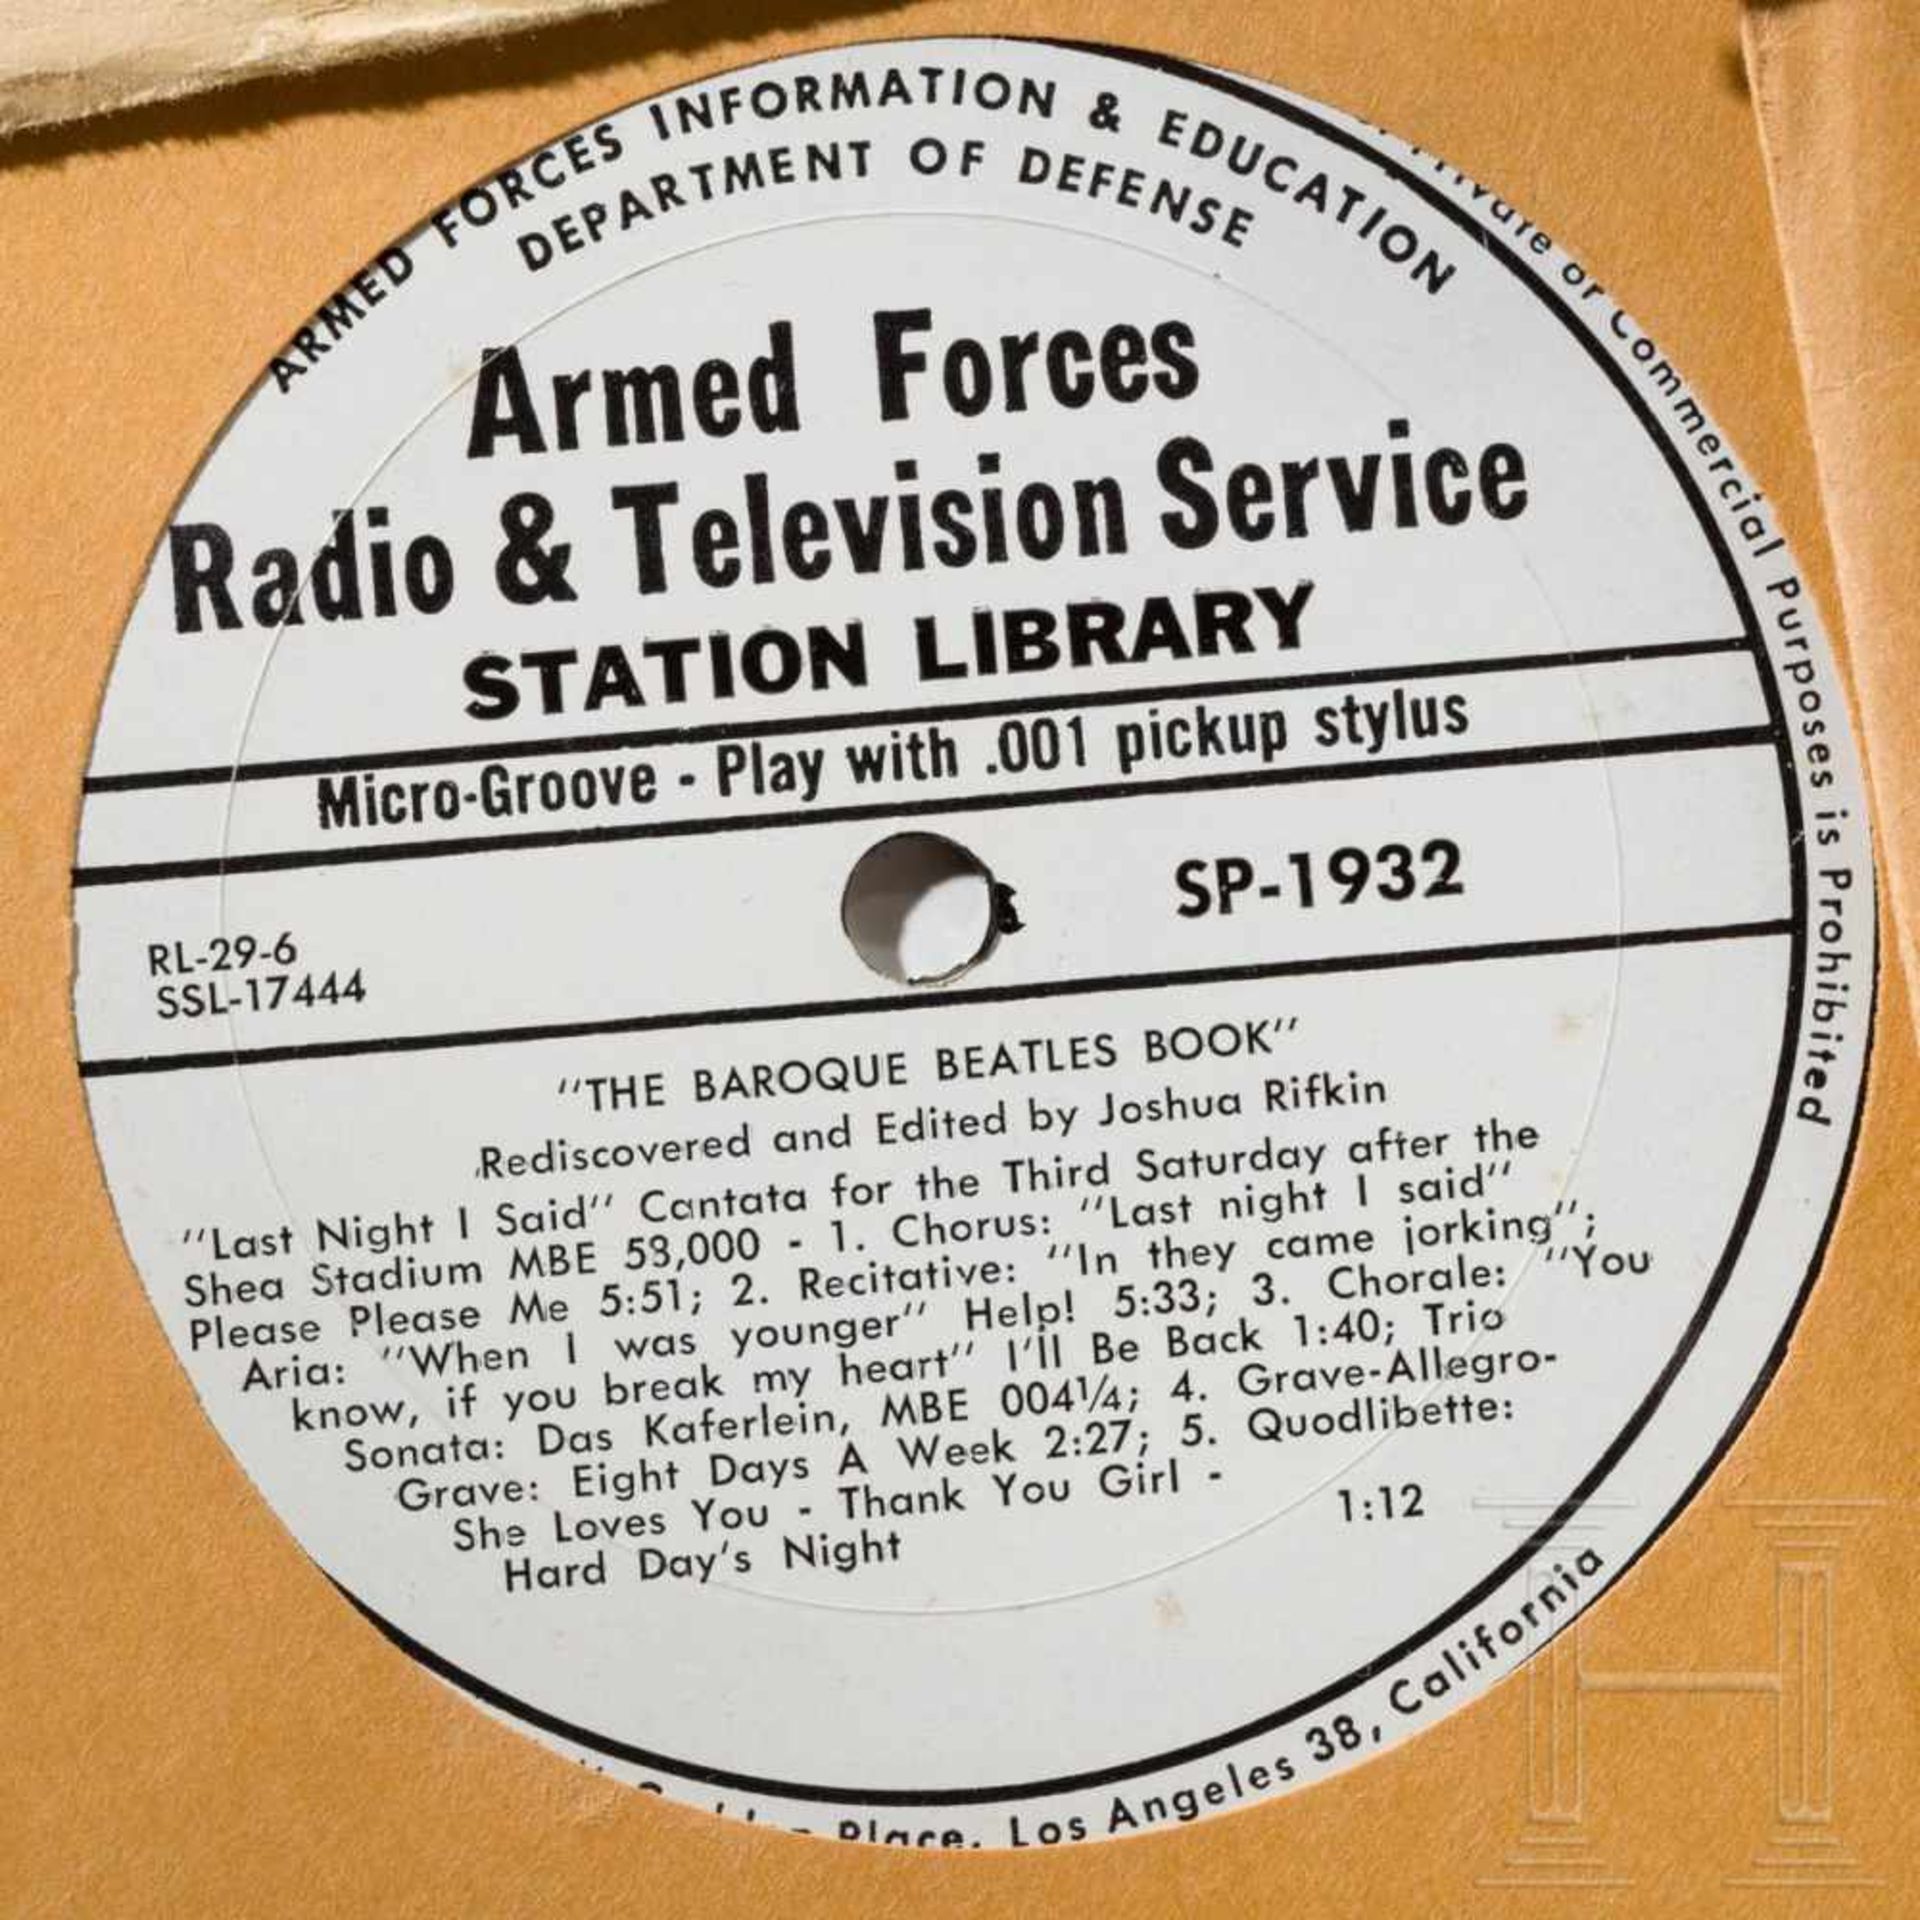 Zehn Schallplatten der AFRTS (Armed Forces Radio & Television Service) - Beatles und weitere - Bild 2 aus 9